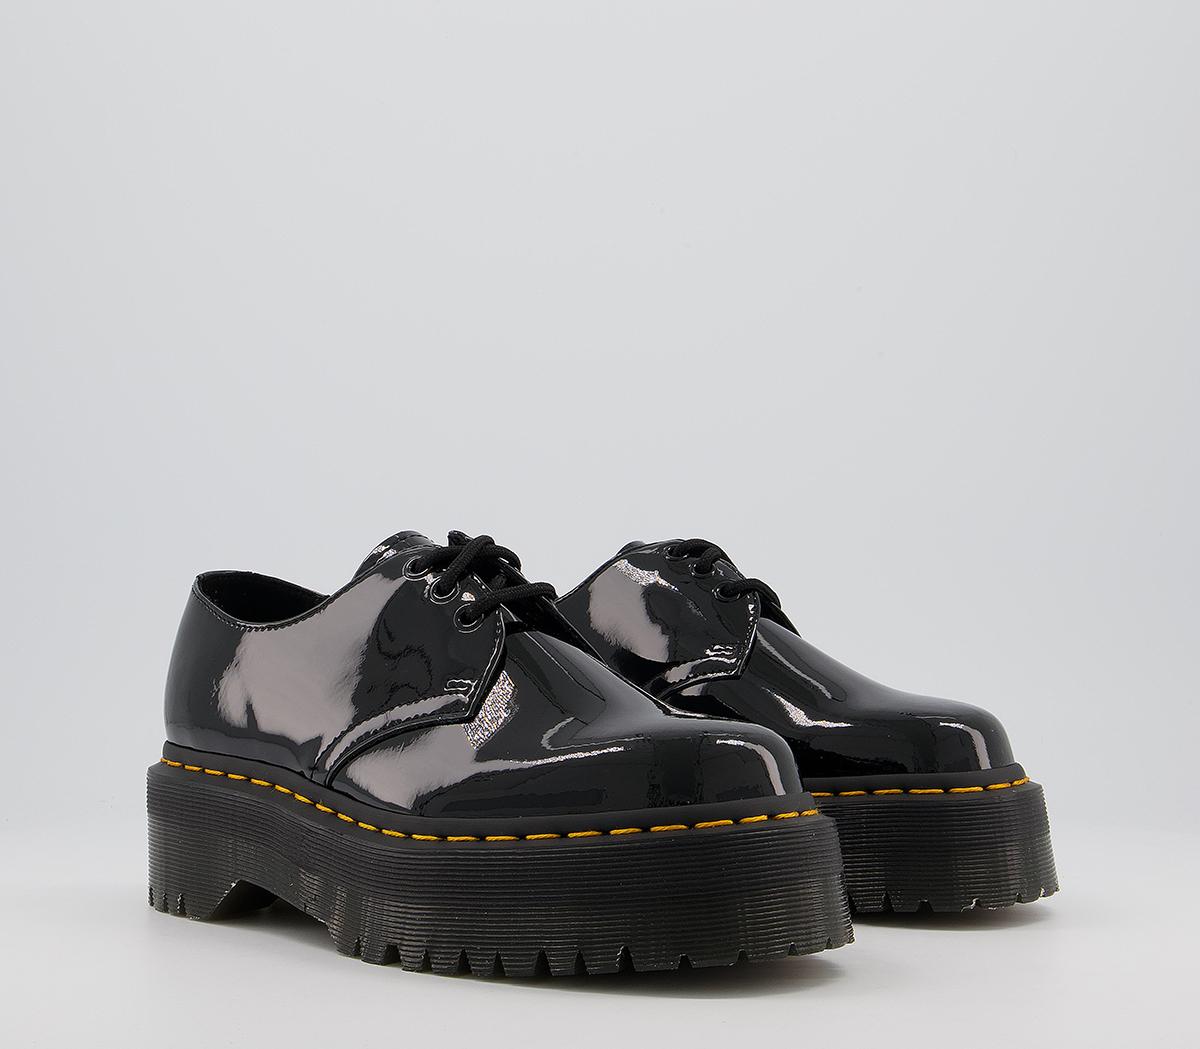 Dr. Martens 1461 Quad 3 Eye Shoes Black Patent - Flat Shoes for Women